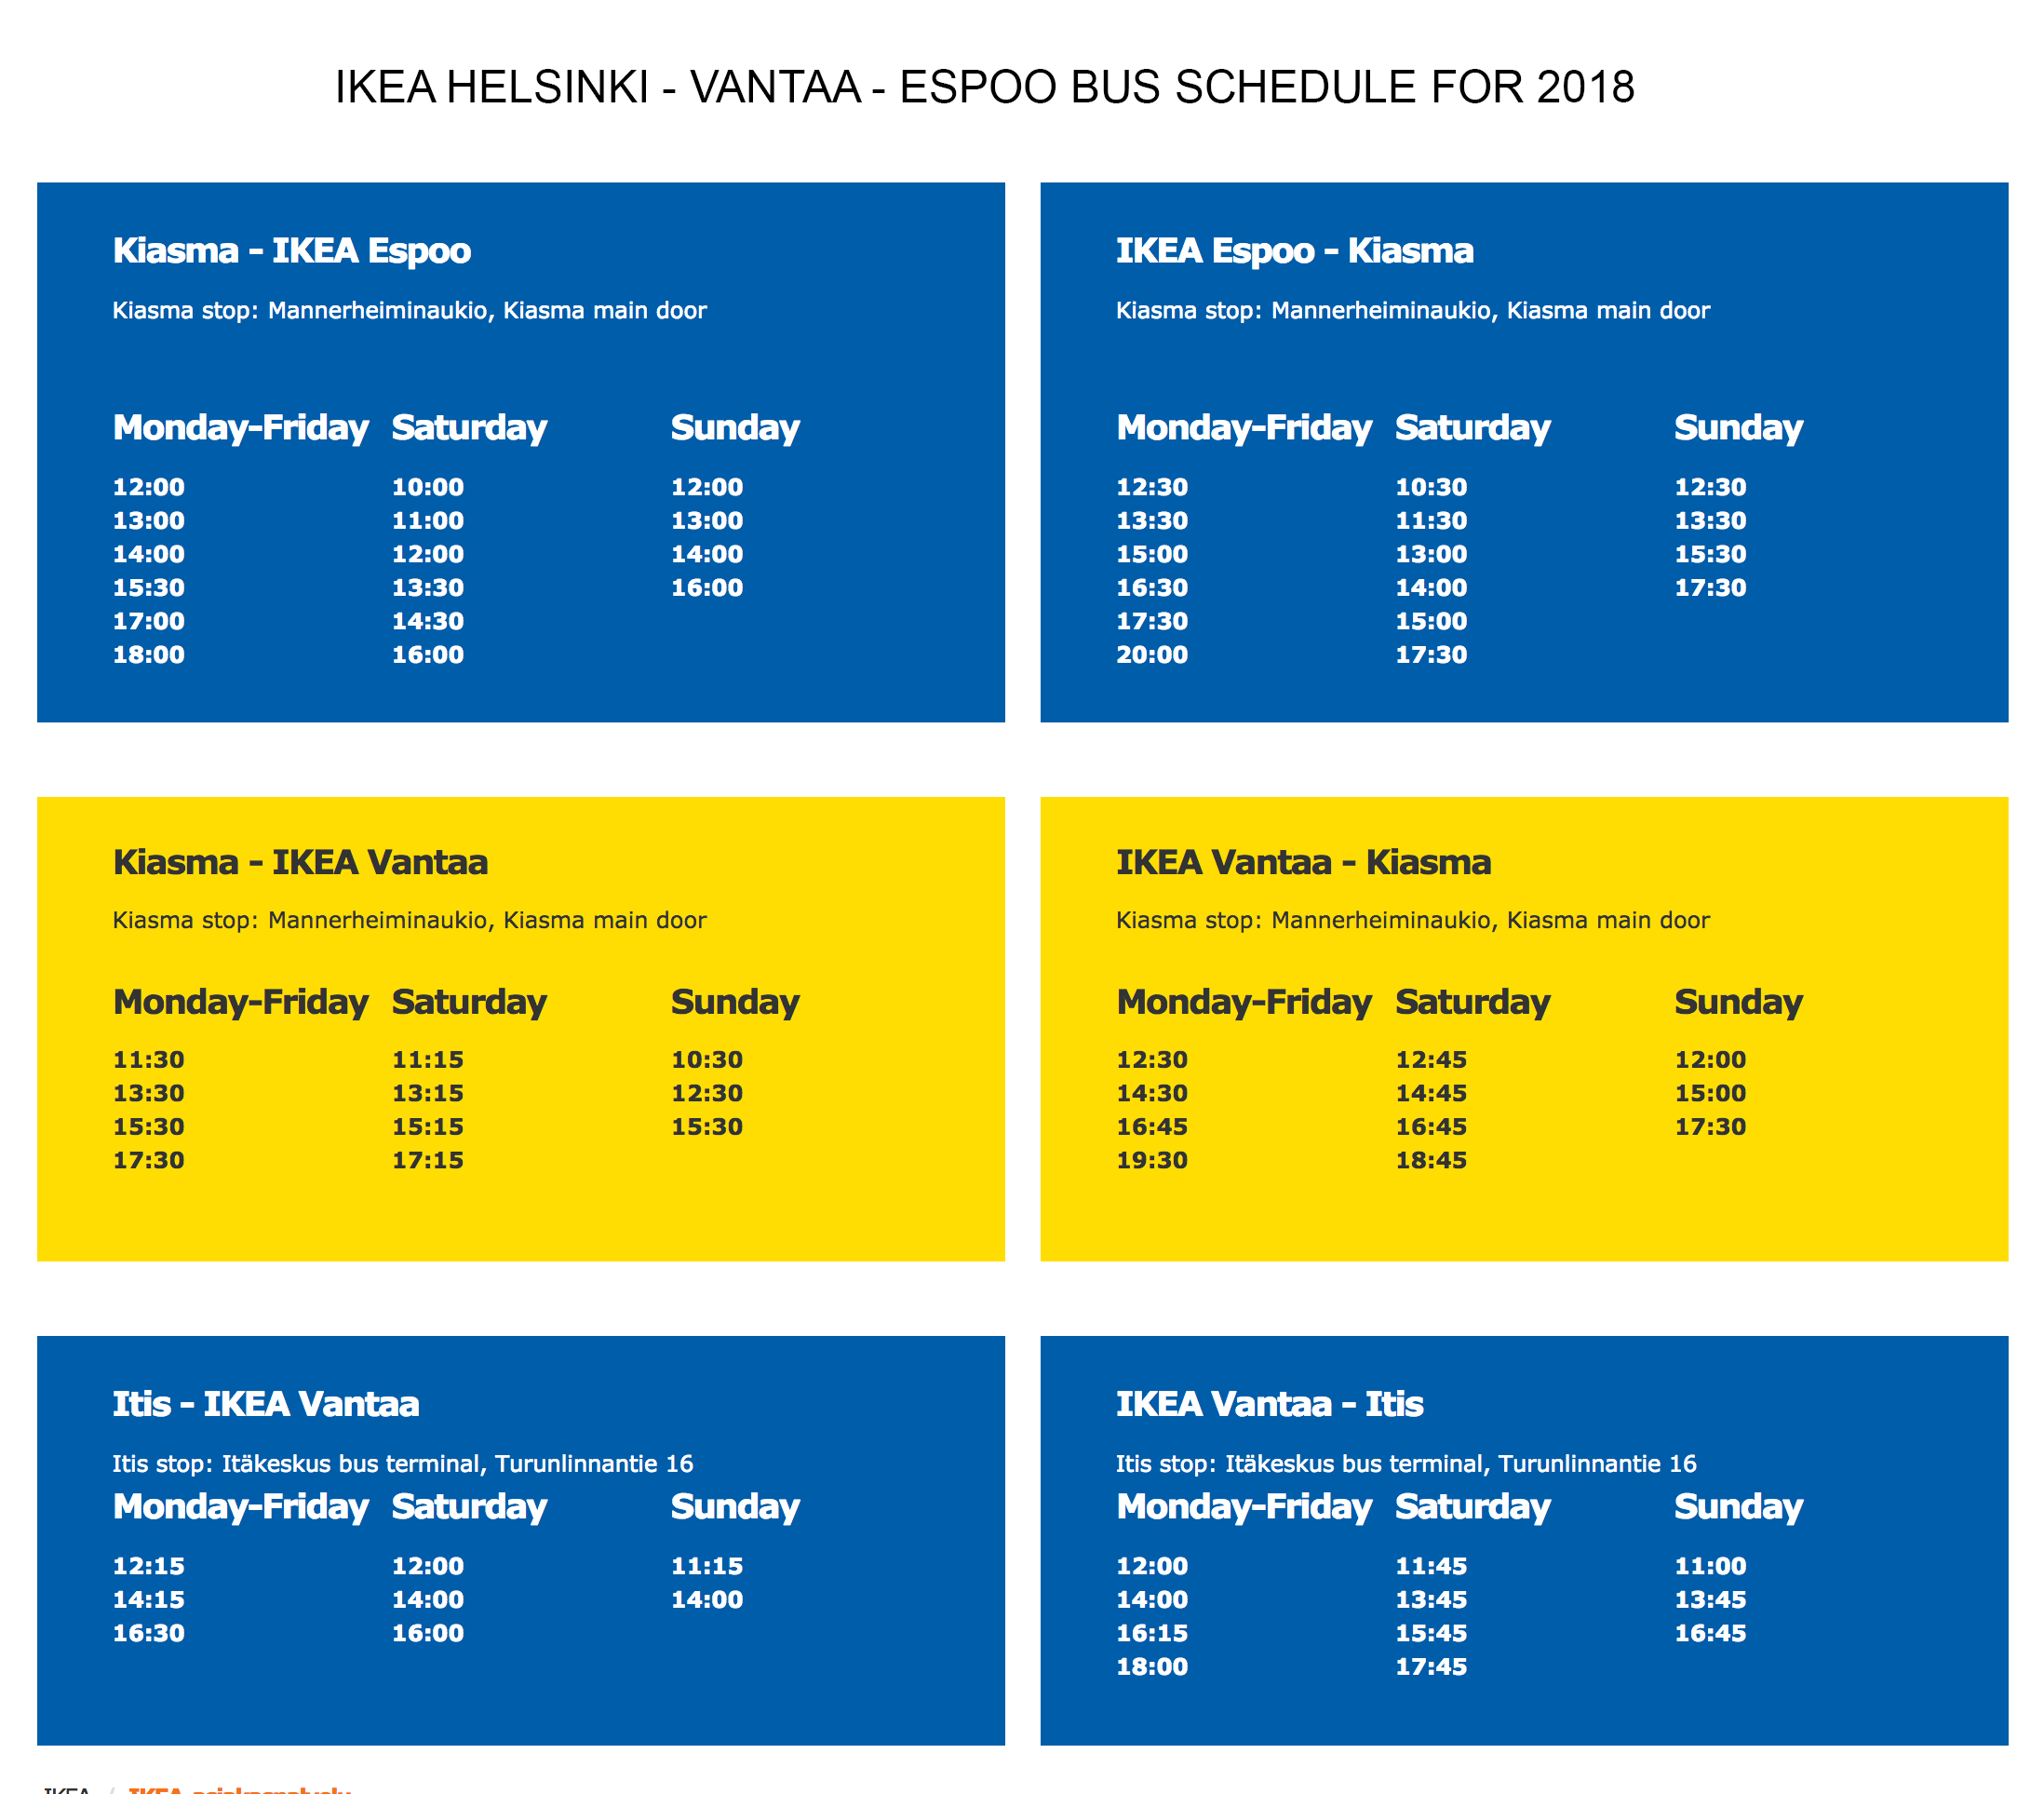 Helsinki Vantaa Espoo IKEA schedule 2018